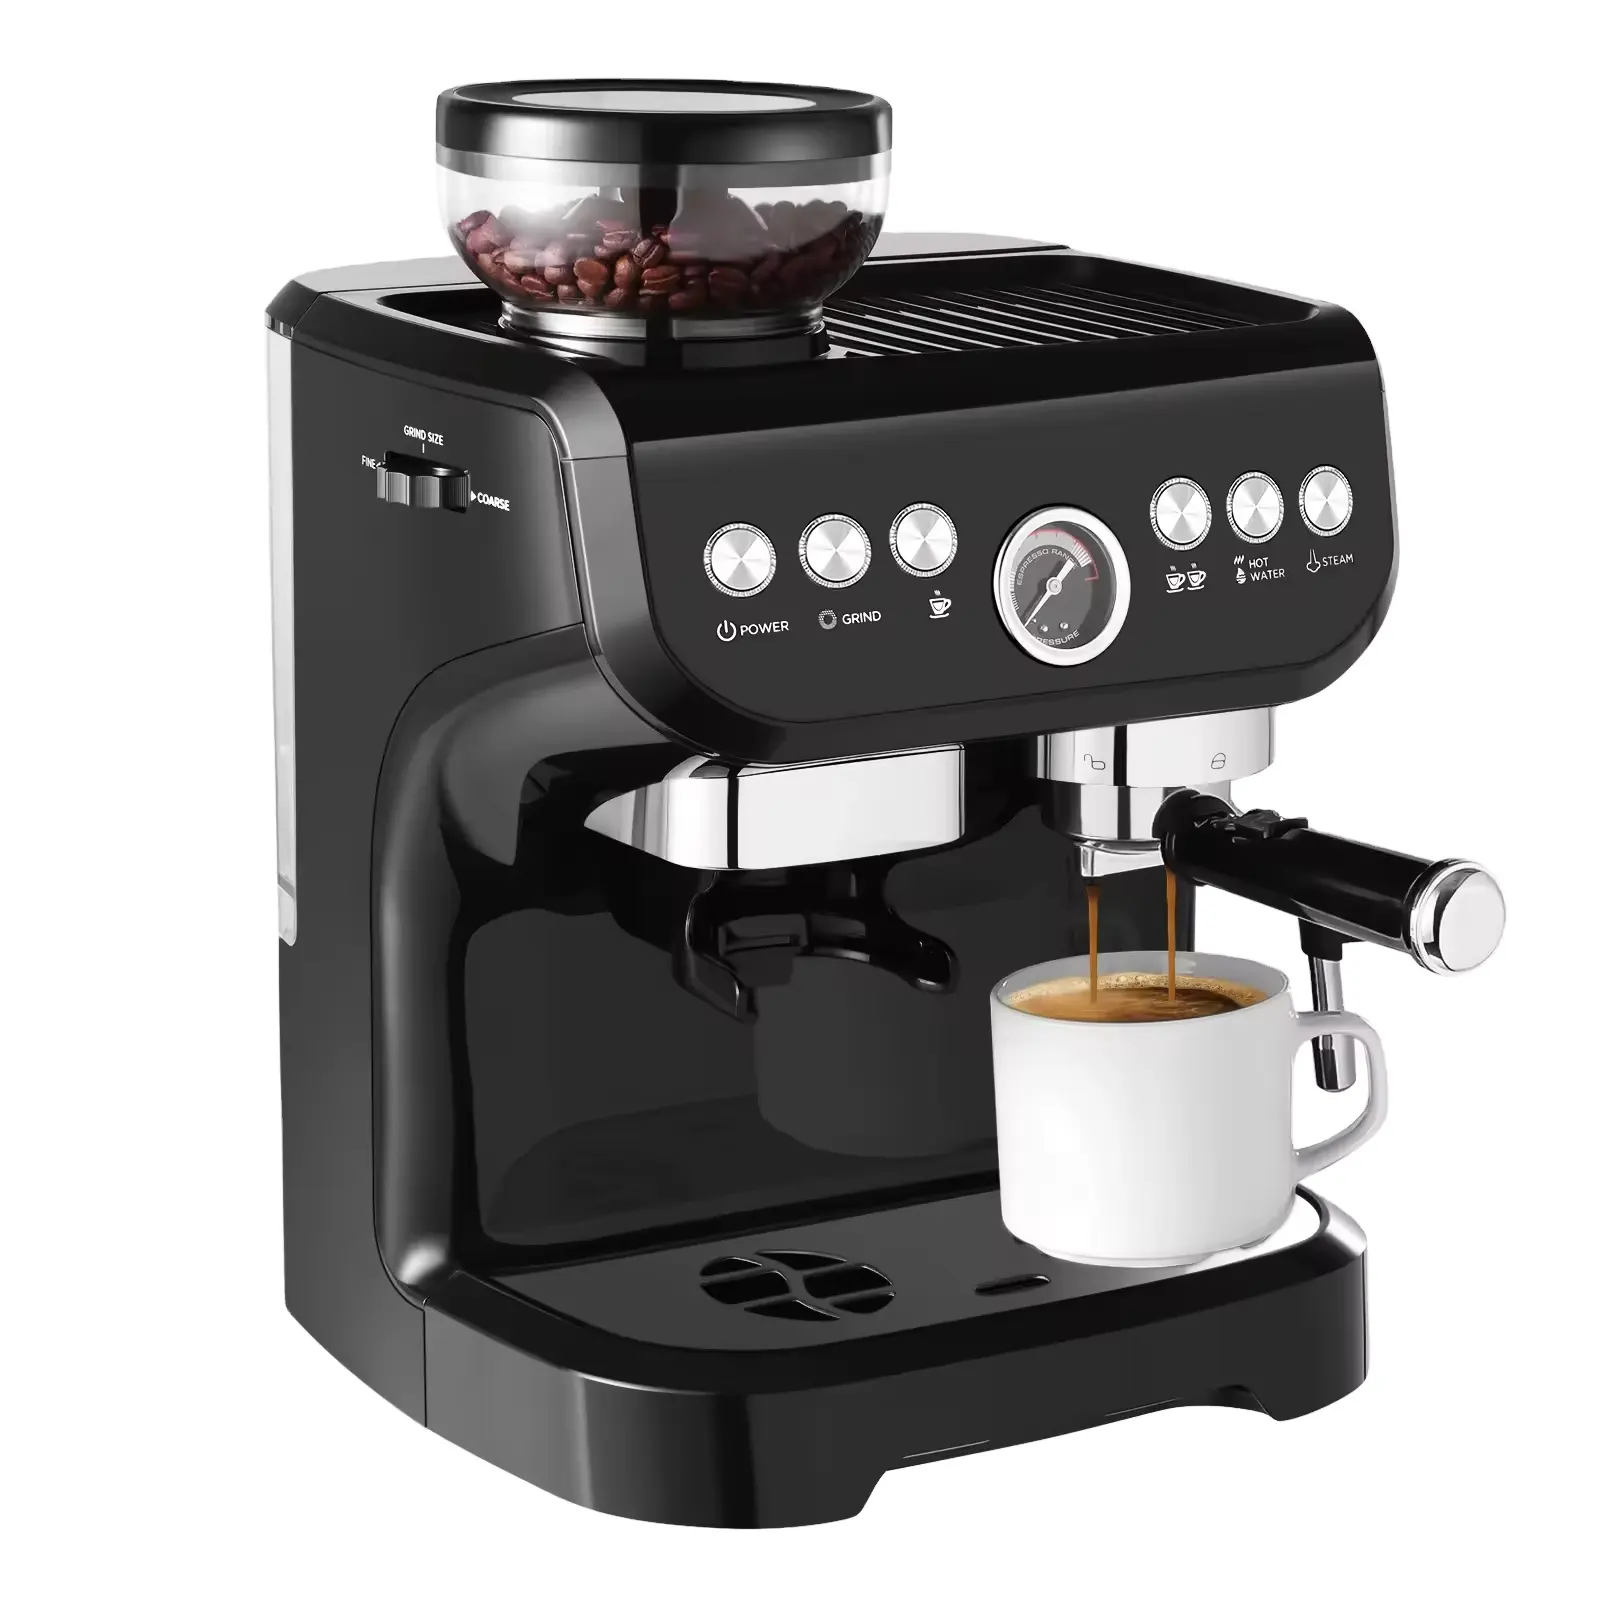 Profesional caffè Espresso macchina per caffè Espresso Multi-funtion completamente automatica 19 BAR elettrico Tatsuno pompa per Cappuccino macchina